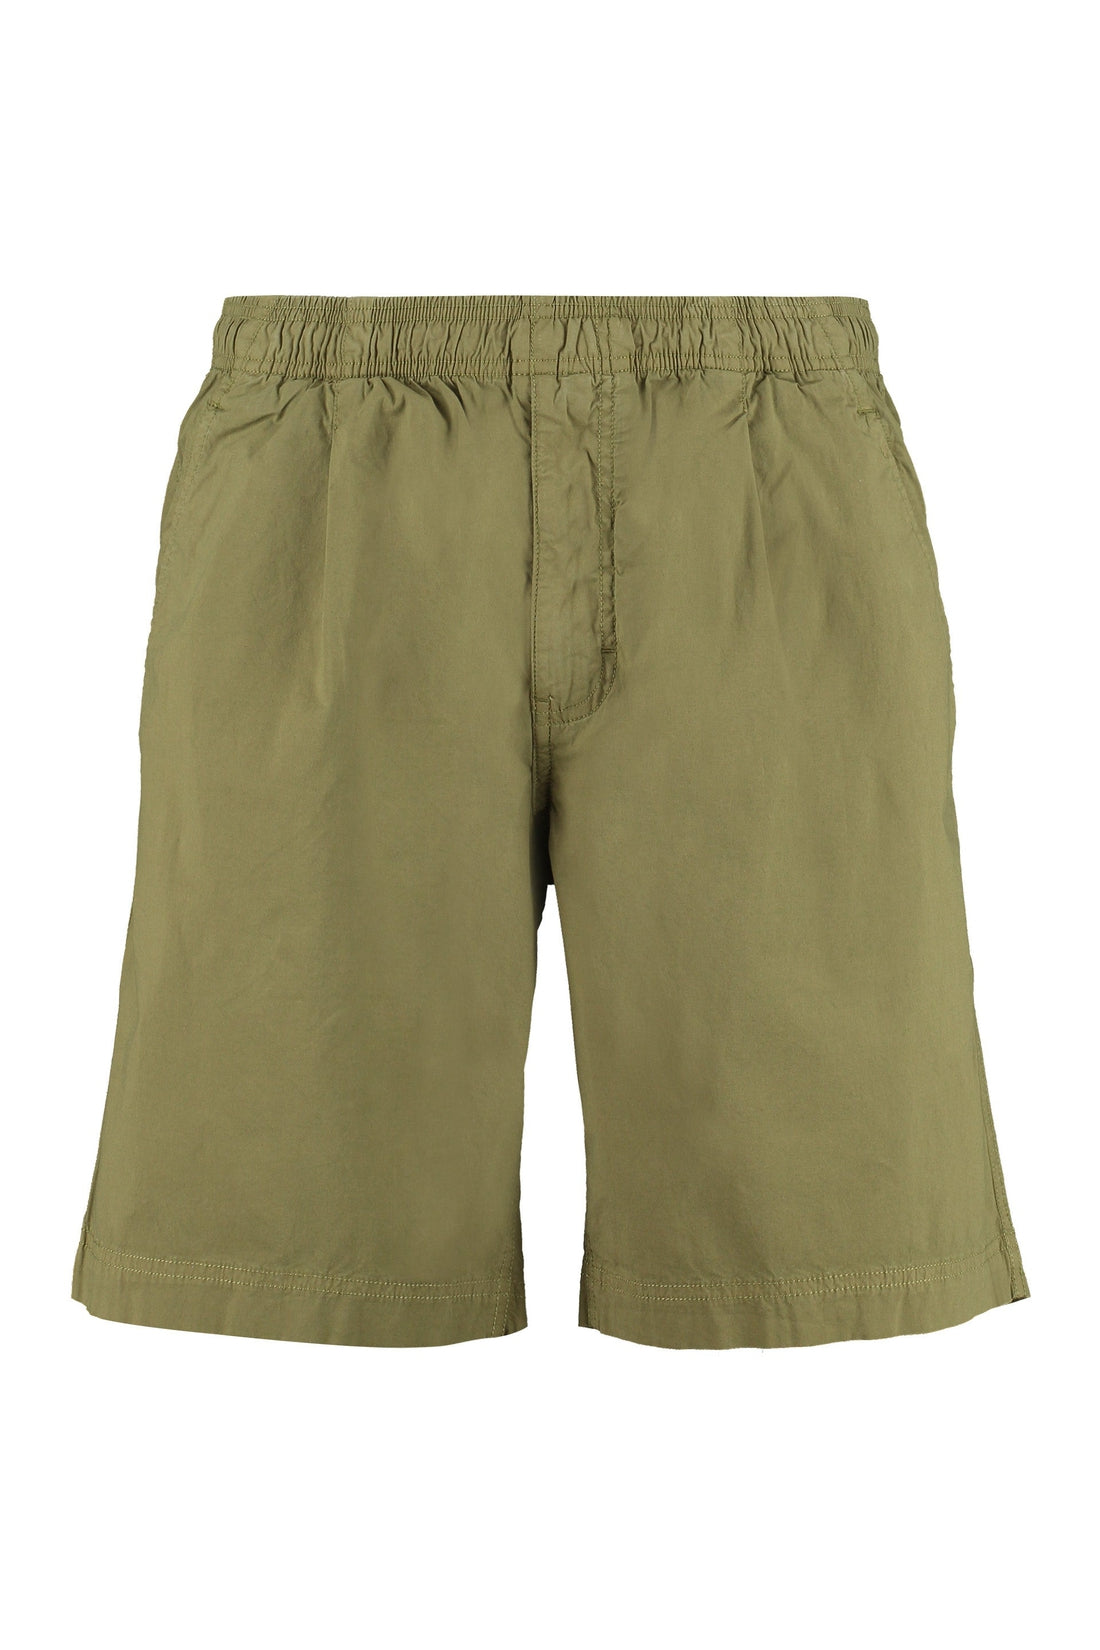 Woolrich-OUTLET-SALE-Cotton bermuda shorts-ARCHIVIST